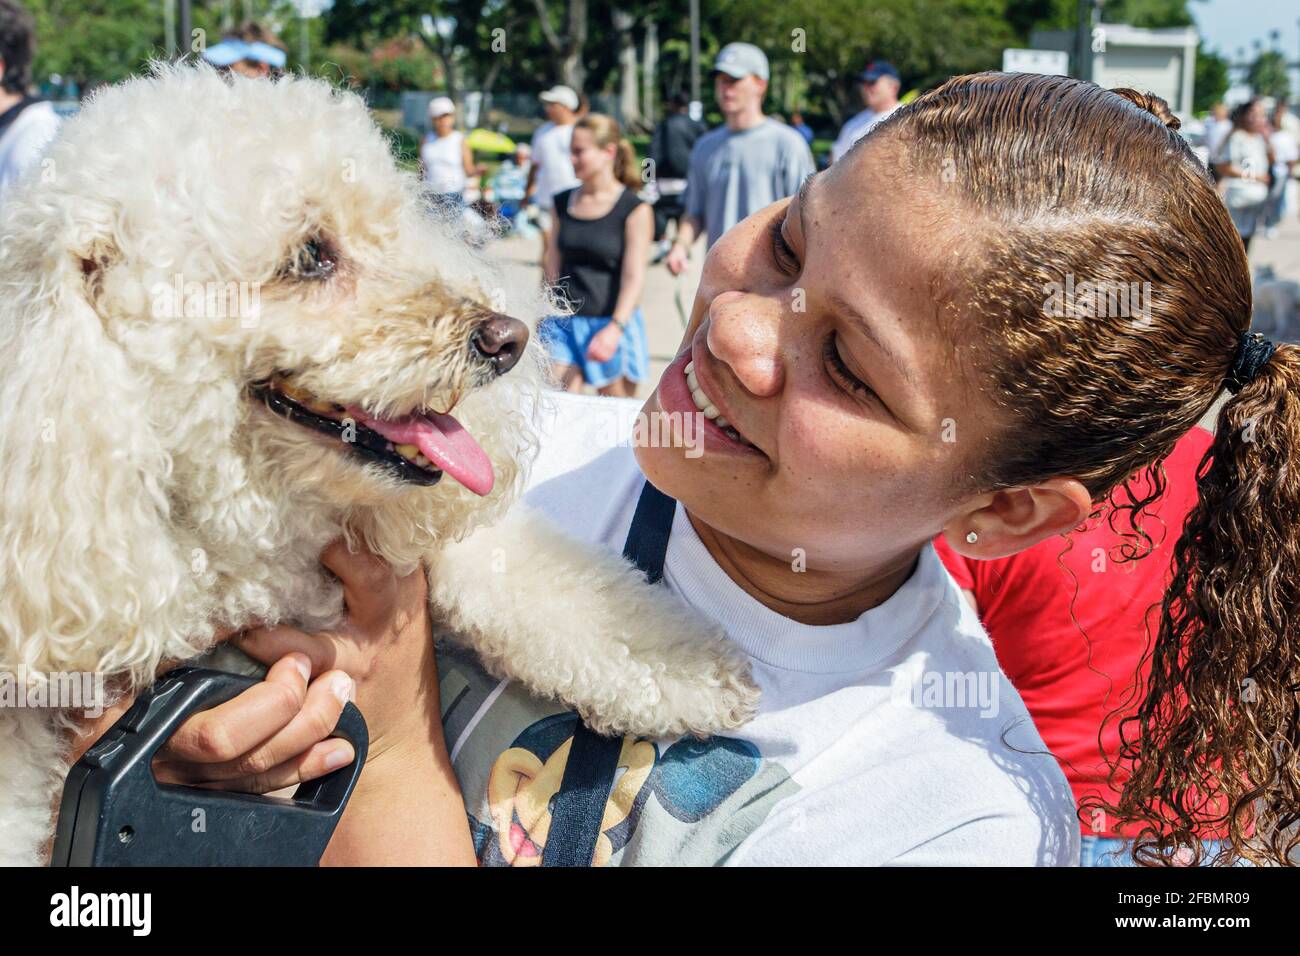 Miami Florida, Bayfront Park Walk for the Animals, Humane Society evento de recaudación de fondos perros, niña negra estudiante voluntario abrazando perro, Foto de stock